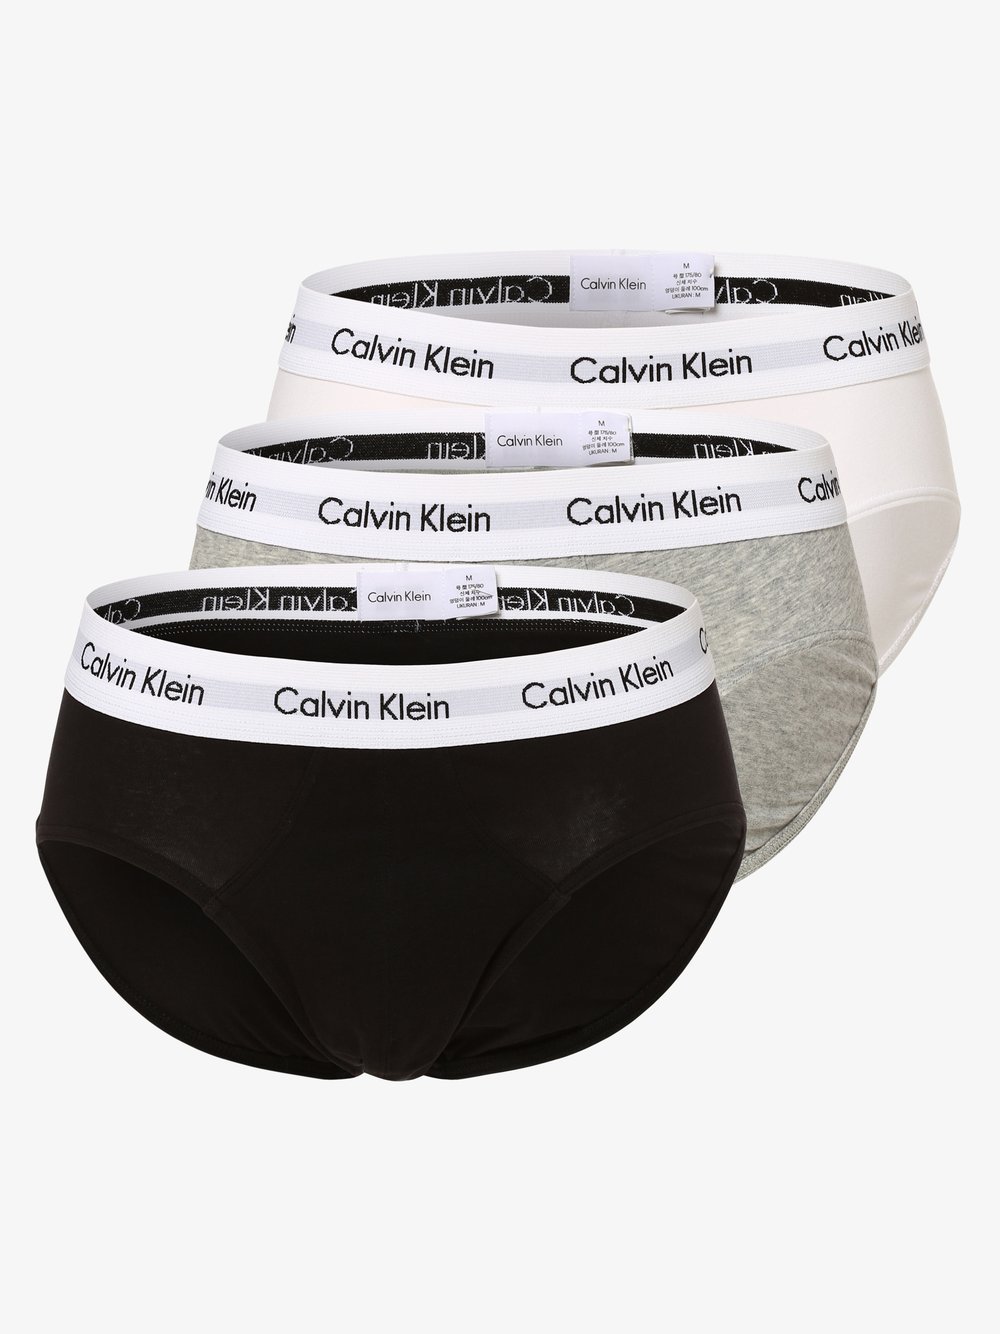 Calvin Klein - Slipy męskie pakowane po 3 szt., szary|biały|czarny